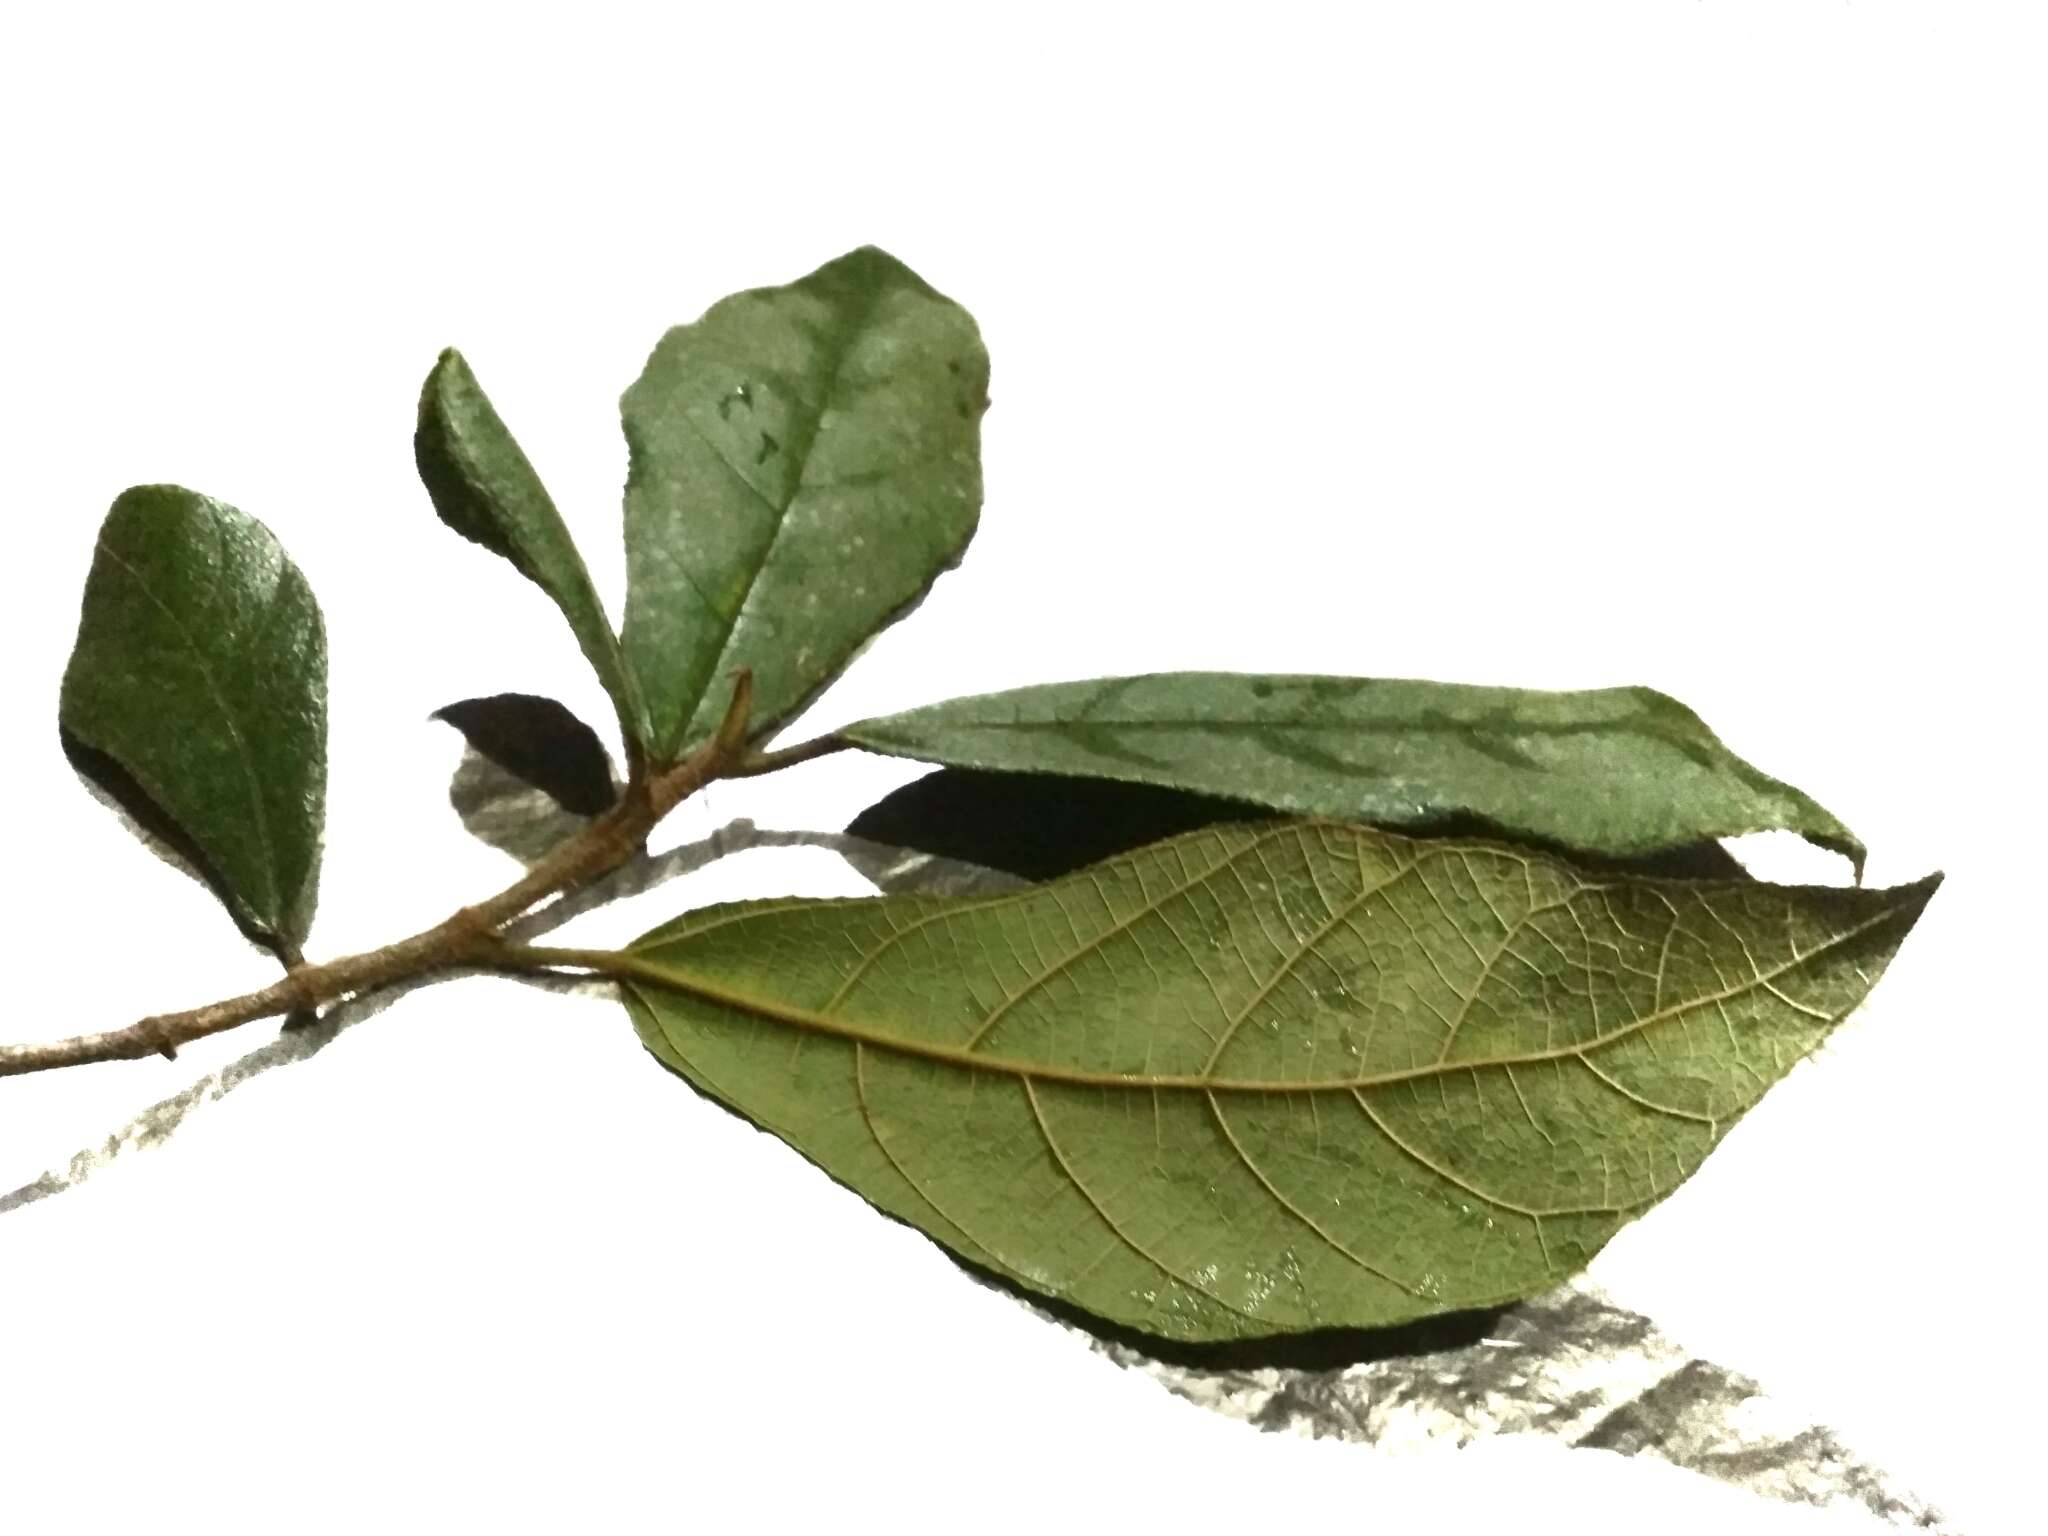 Image of Ficus aurata (Miq.) Miq.